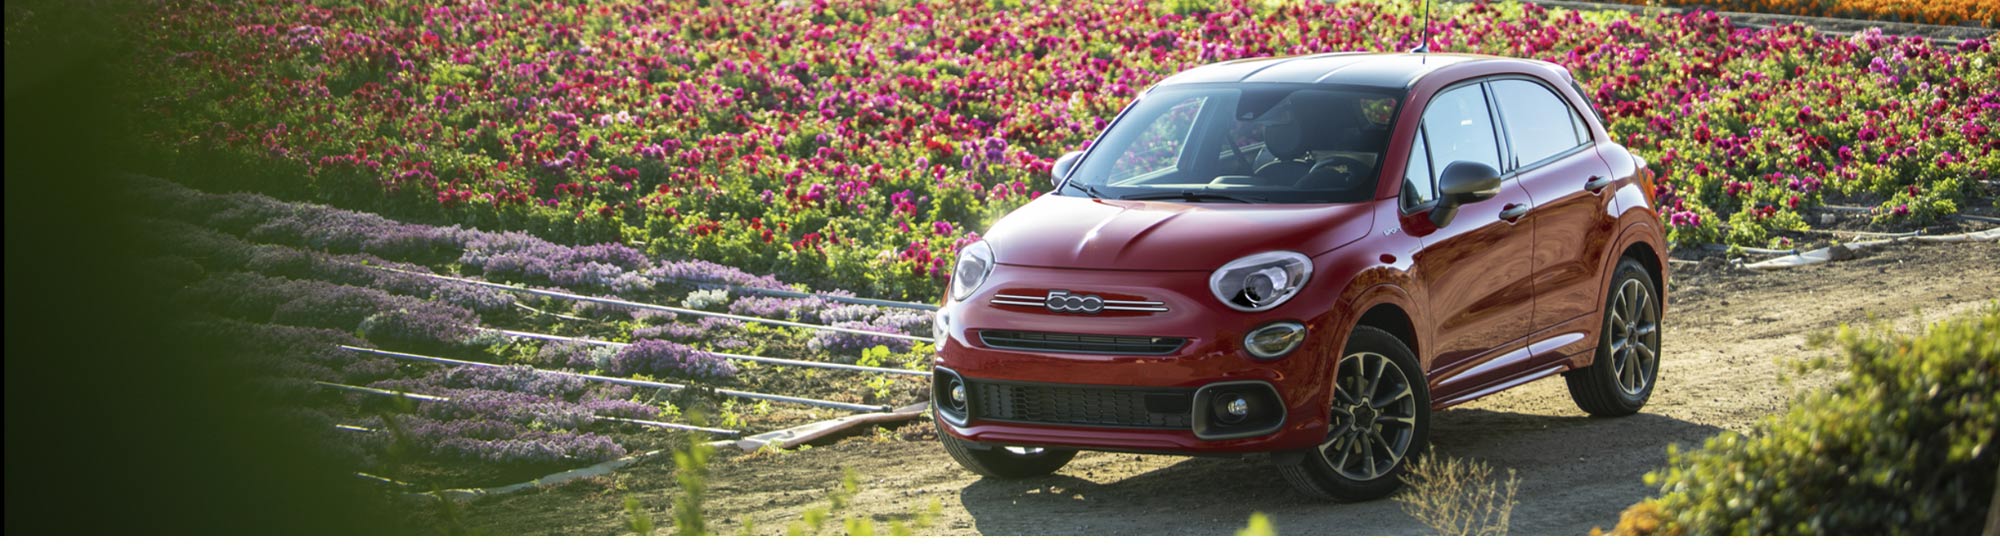 Un Fiat 500X Sport 2020 rojo en un camino de tierra junto a un campo de flores.